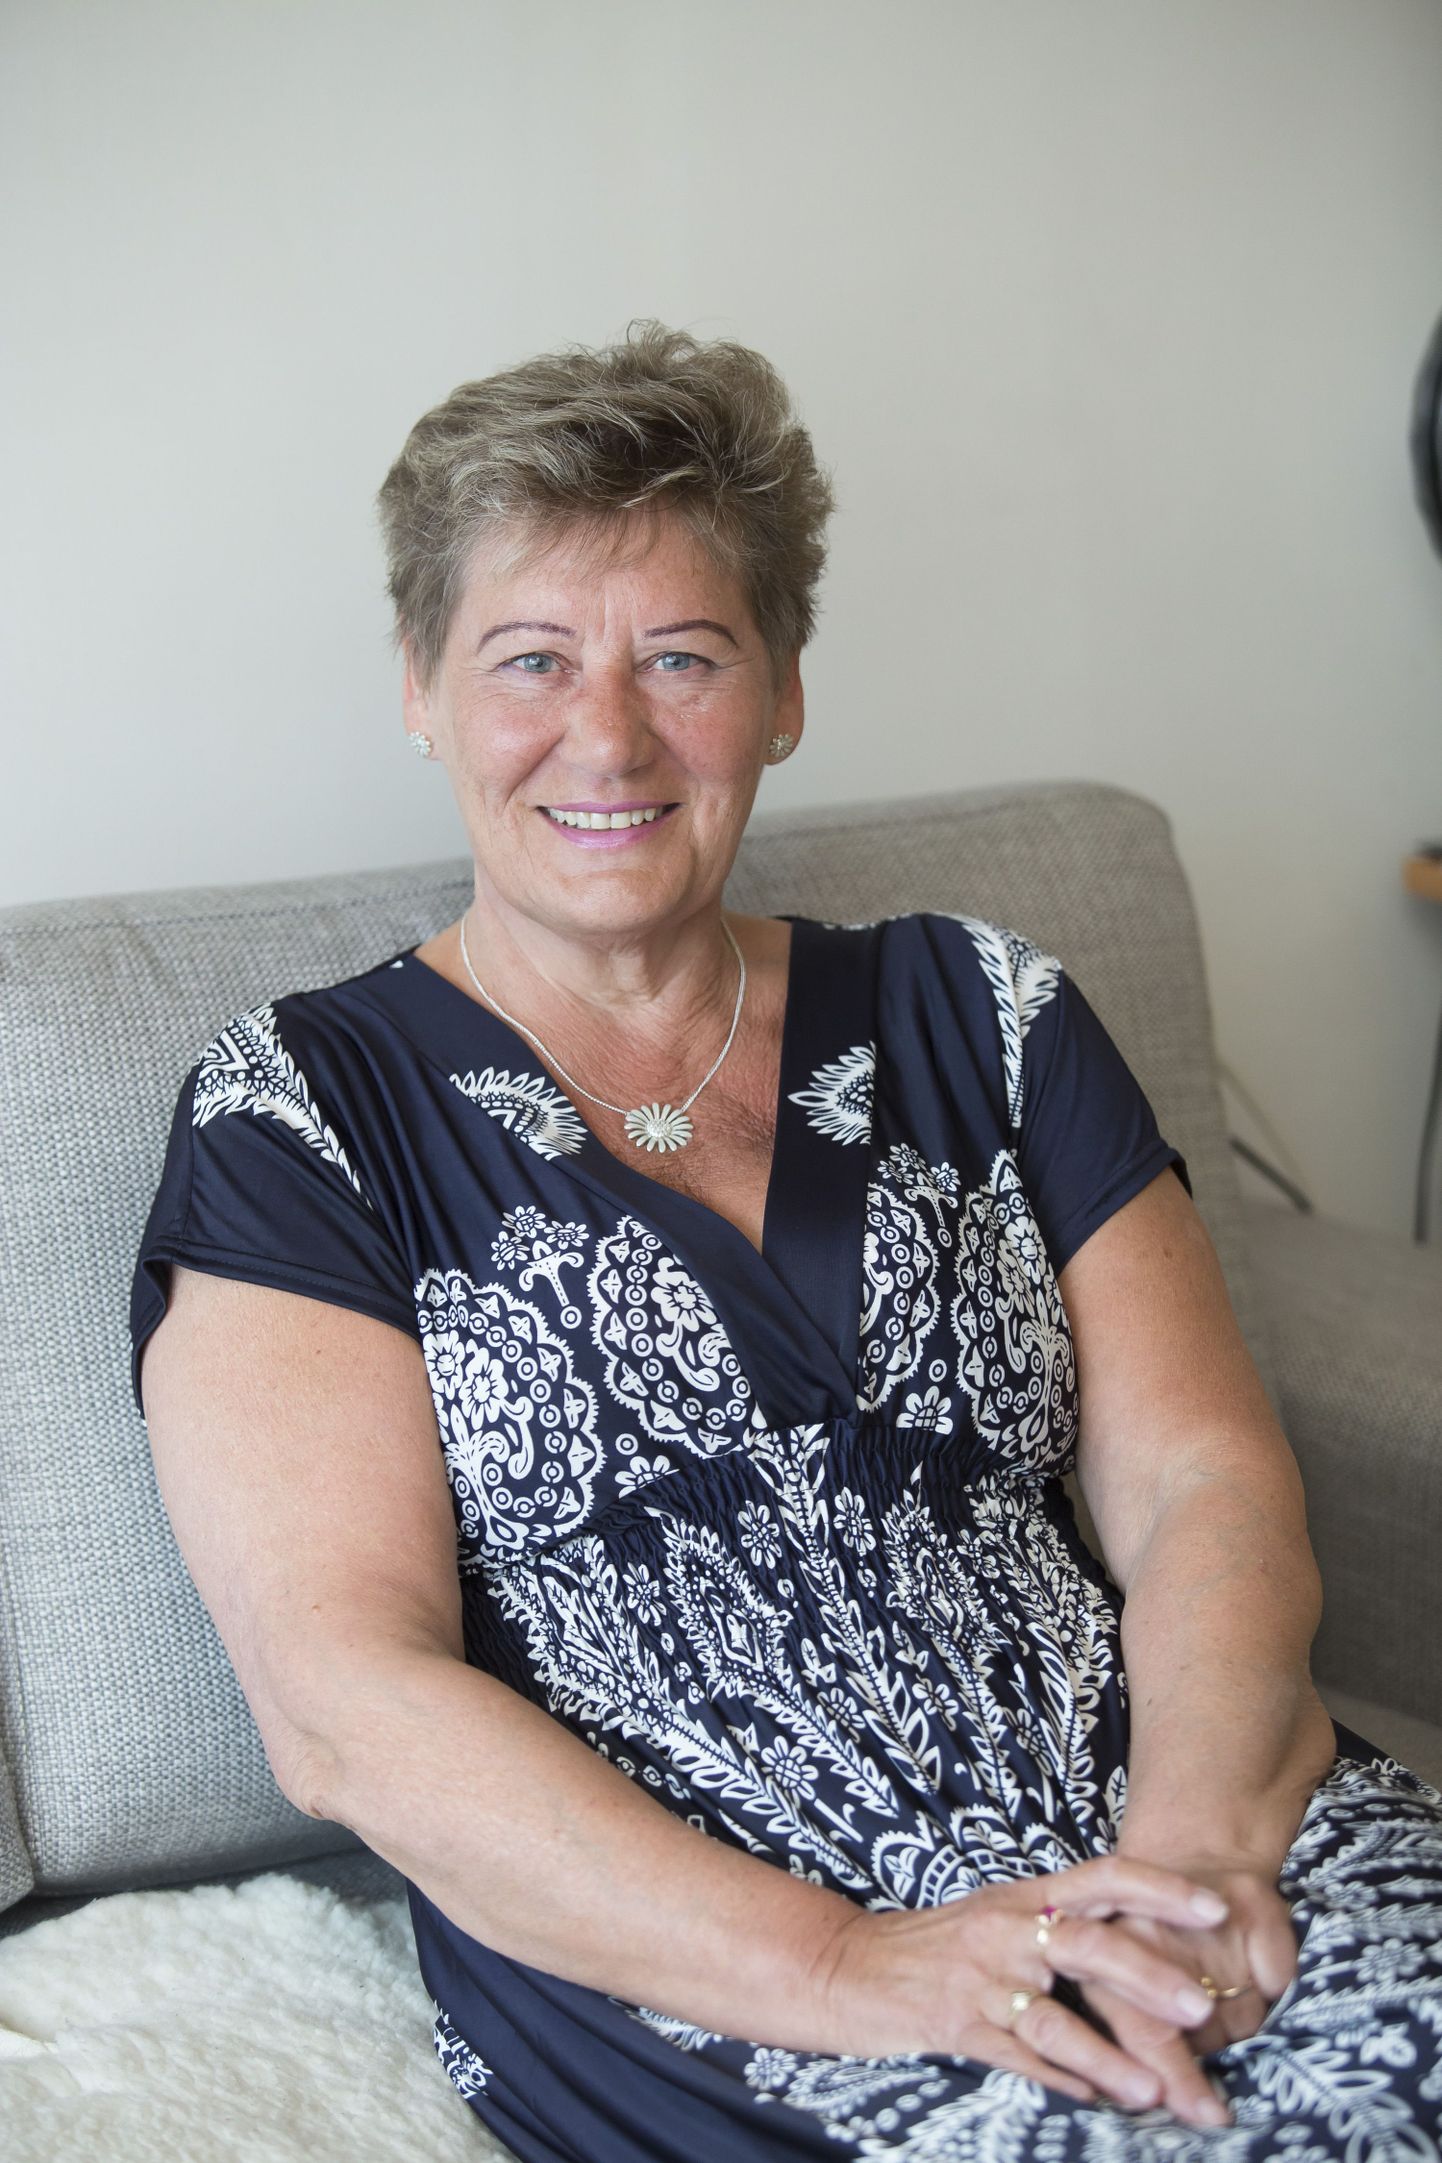 Särav Rakvere reaalgümnaasiumi kauaaegne õppealajuhataja Liivi ­Bauer naudib pensionipõlve ja seab vahvaid eluplaane.